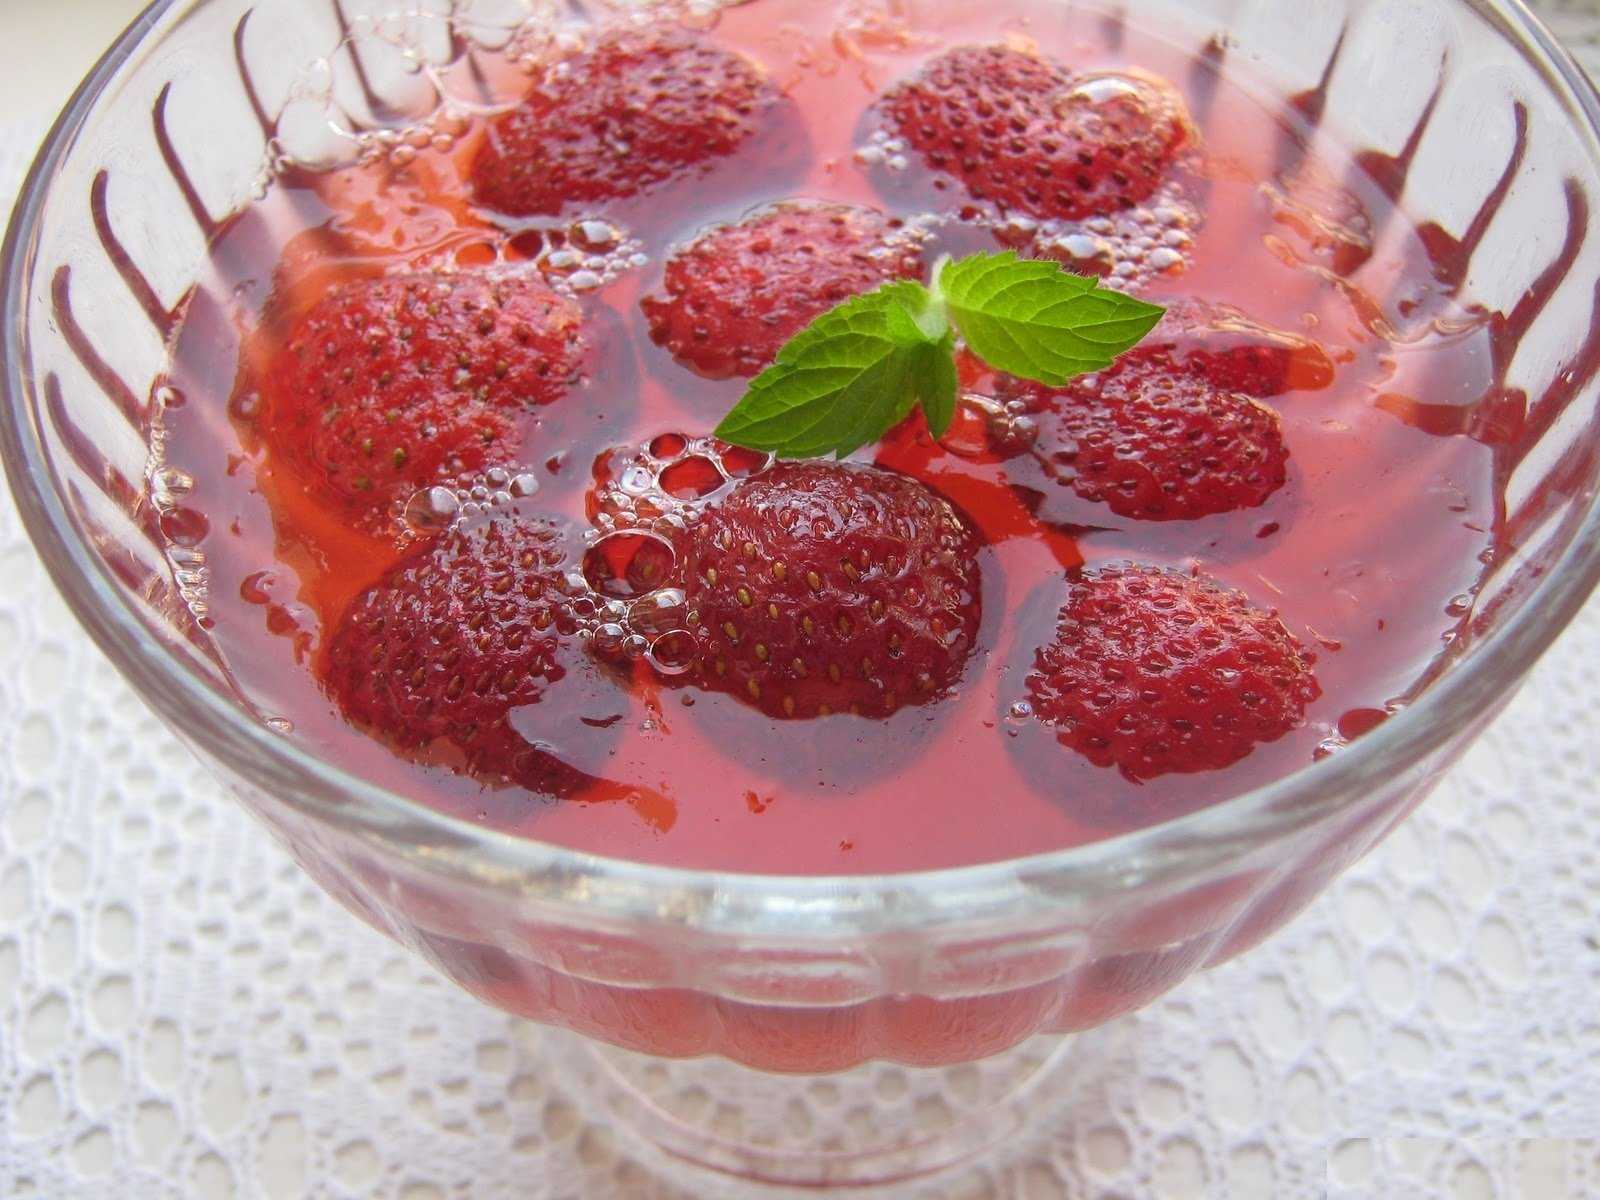 Как приготовить кисель из замороженных ягод клубники: поиск по ингредиентам, советы, отзывы, подсчет калорий, изменение порций, похожие рецепты